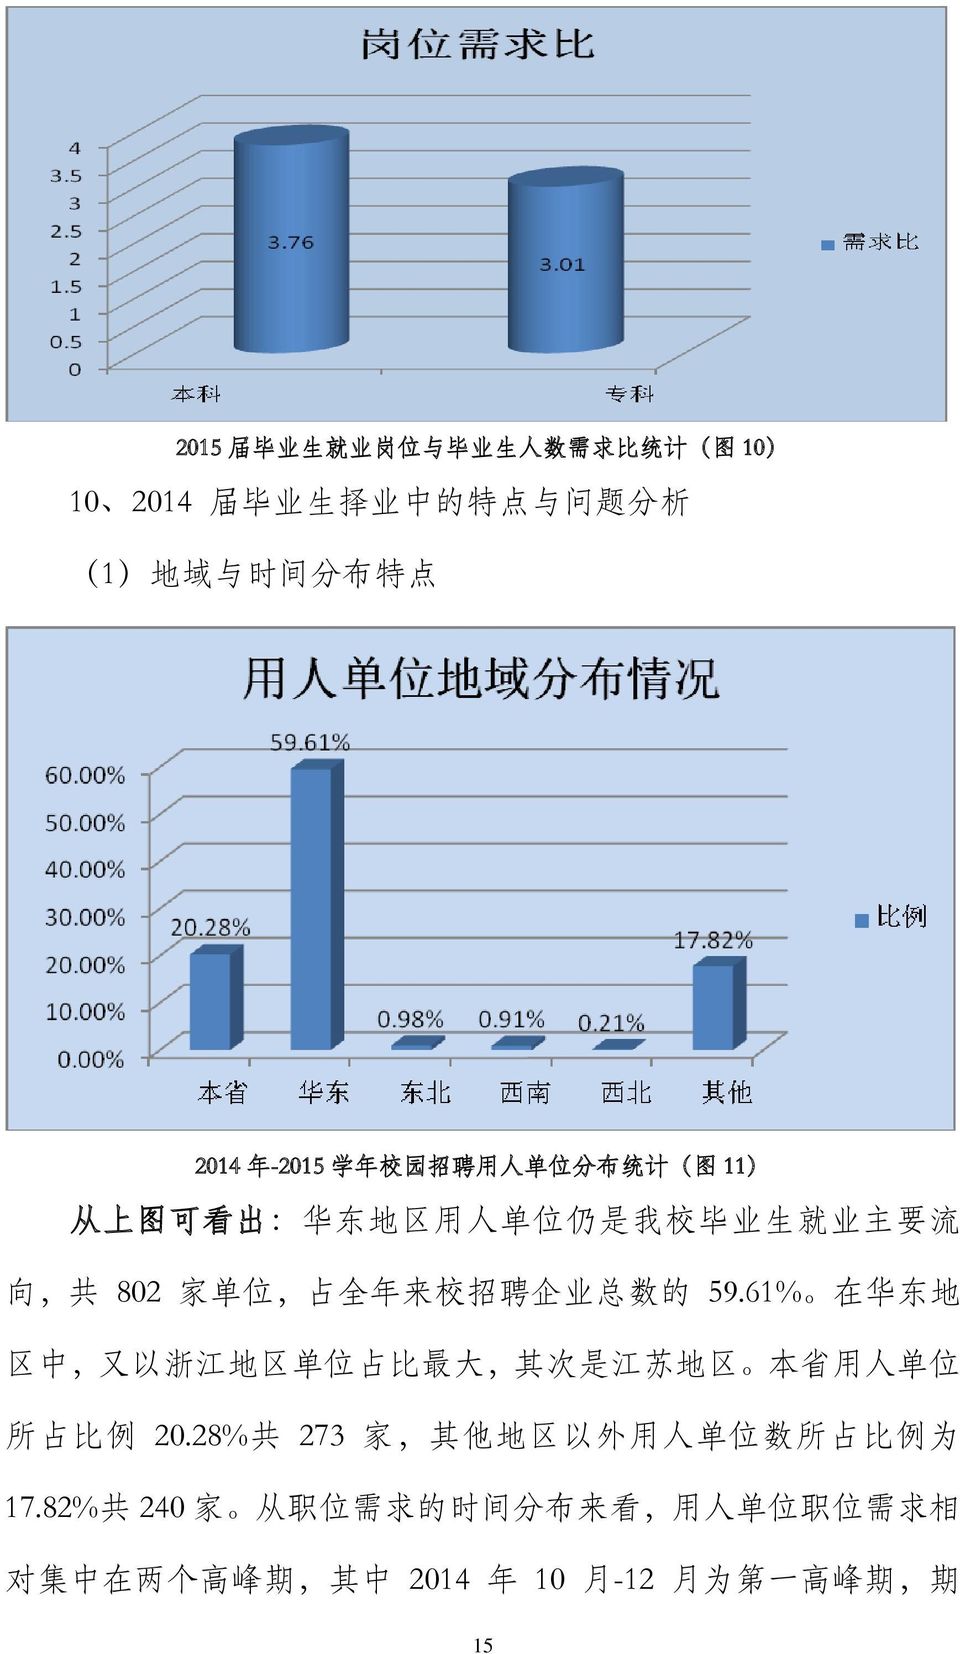 总 数 的 59.61% 在 华 东 地 区 中, 又 以 浙 江 地 区 单 位 占 比 最 大, 其 次 是 江 苏 地 区 本 省 用 人 单 位 所 占 比 例 20.